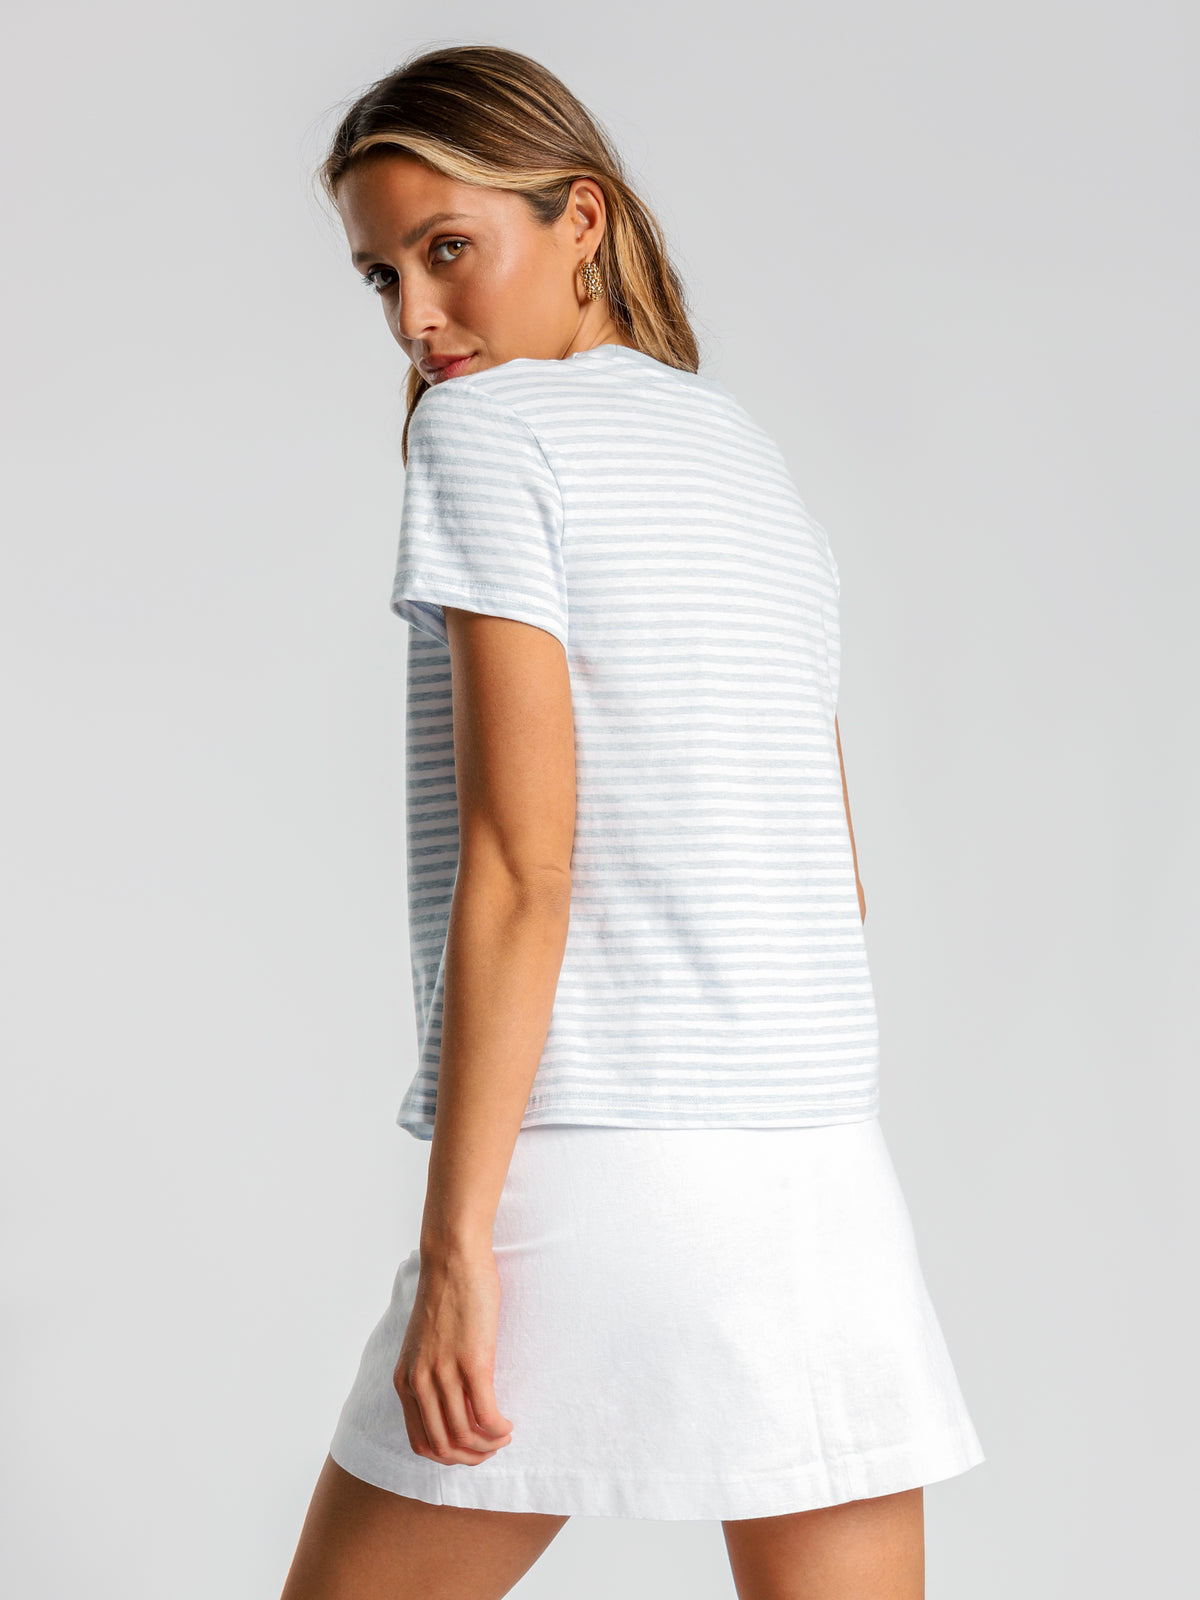 Gracie Ringer Update T-Shirt in Blue &amp; White Stripe